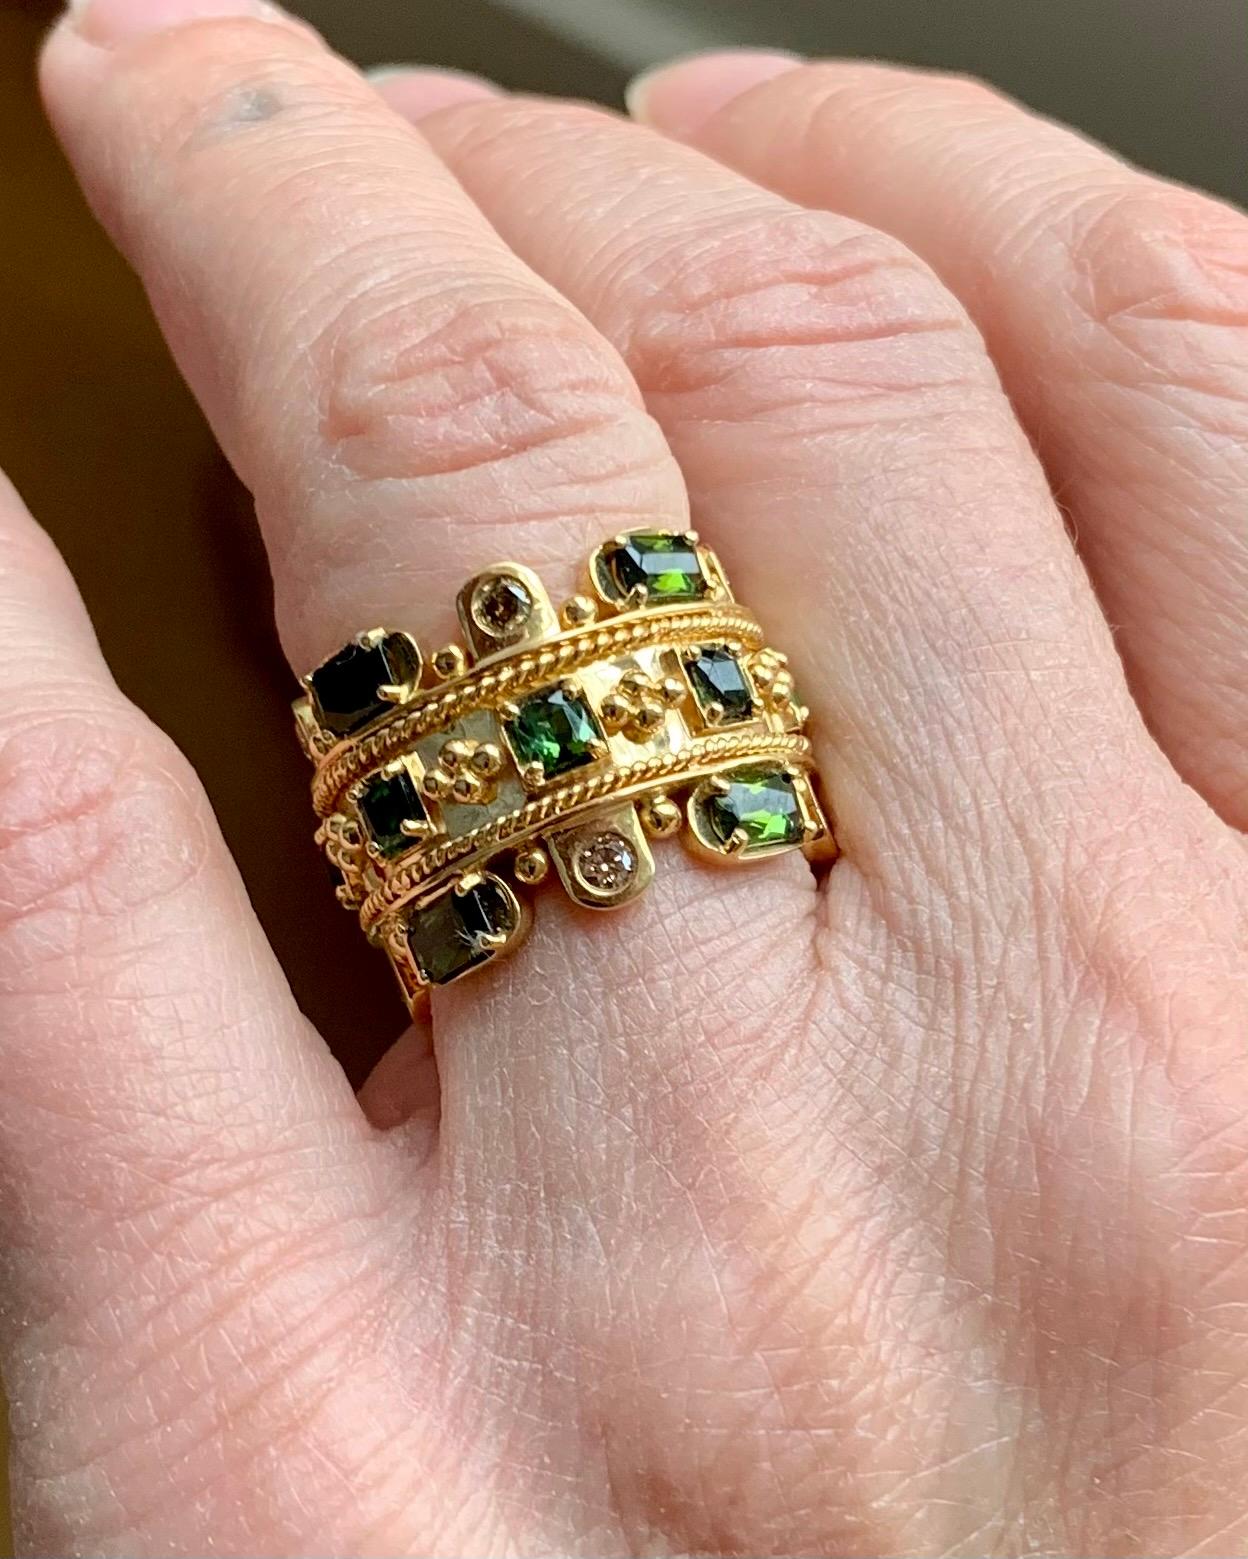 Sehr attraktiver Ring aus 18 K Gelbgold. Die Inspiration für diesen Ring stammt aus der byzantinischen Handwerkskunst. Der Ring enthält 16 grüne Turmaline mit einem Gewicht von 3,42 ct und 8 Diamanten im Brillantschliff mit einem Gewicht von 0,43